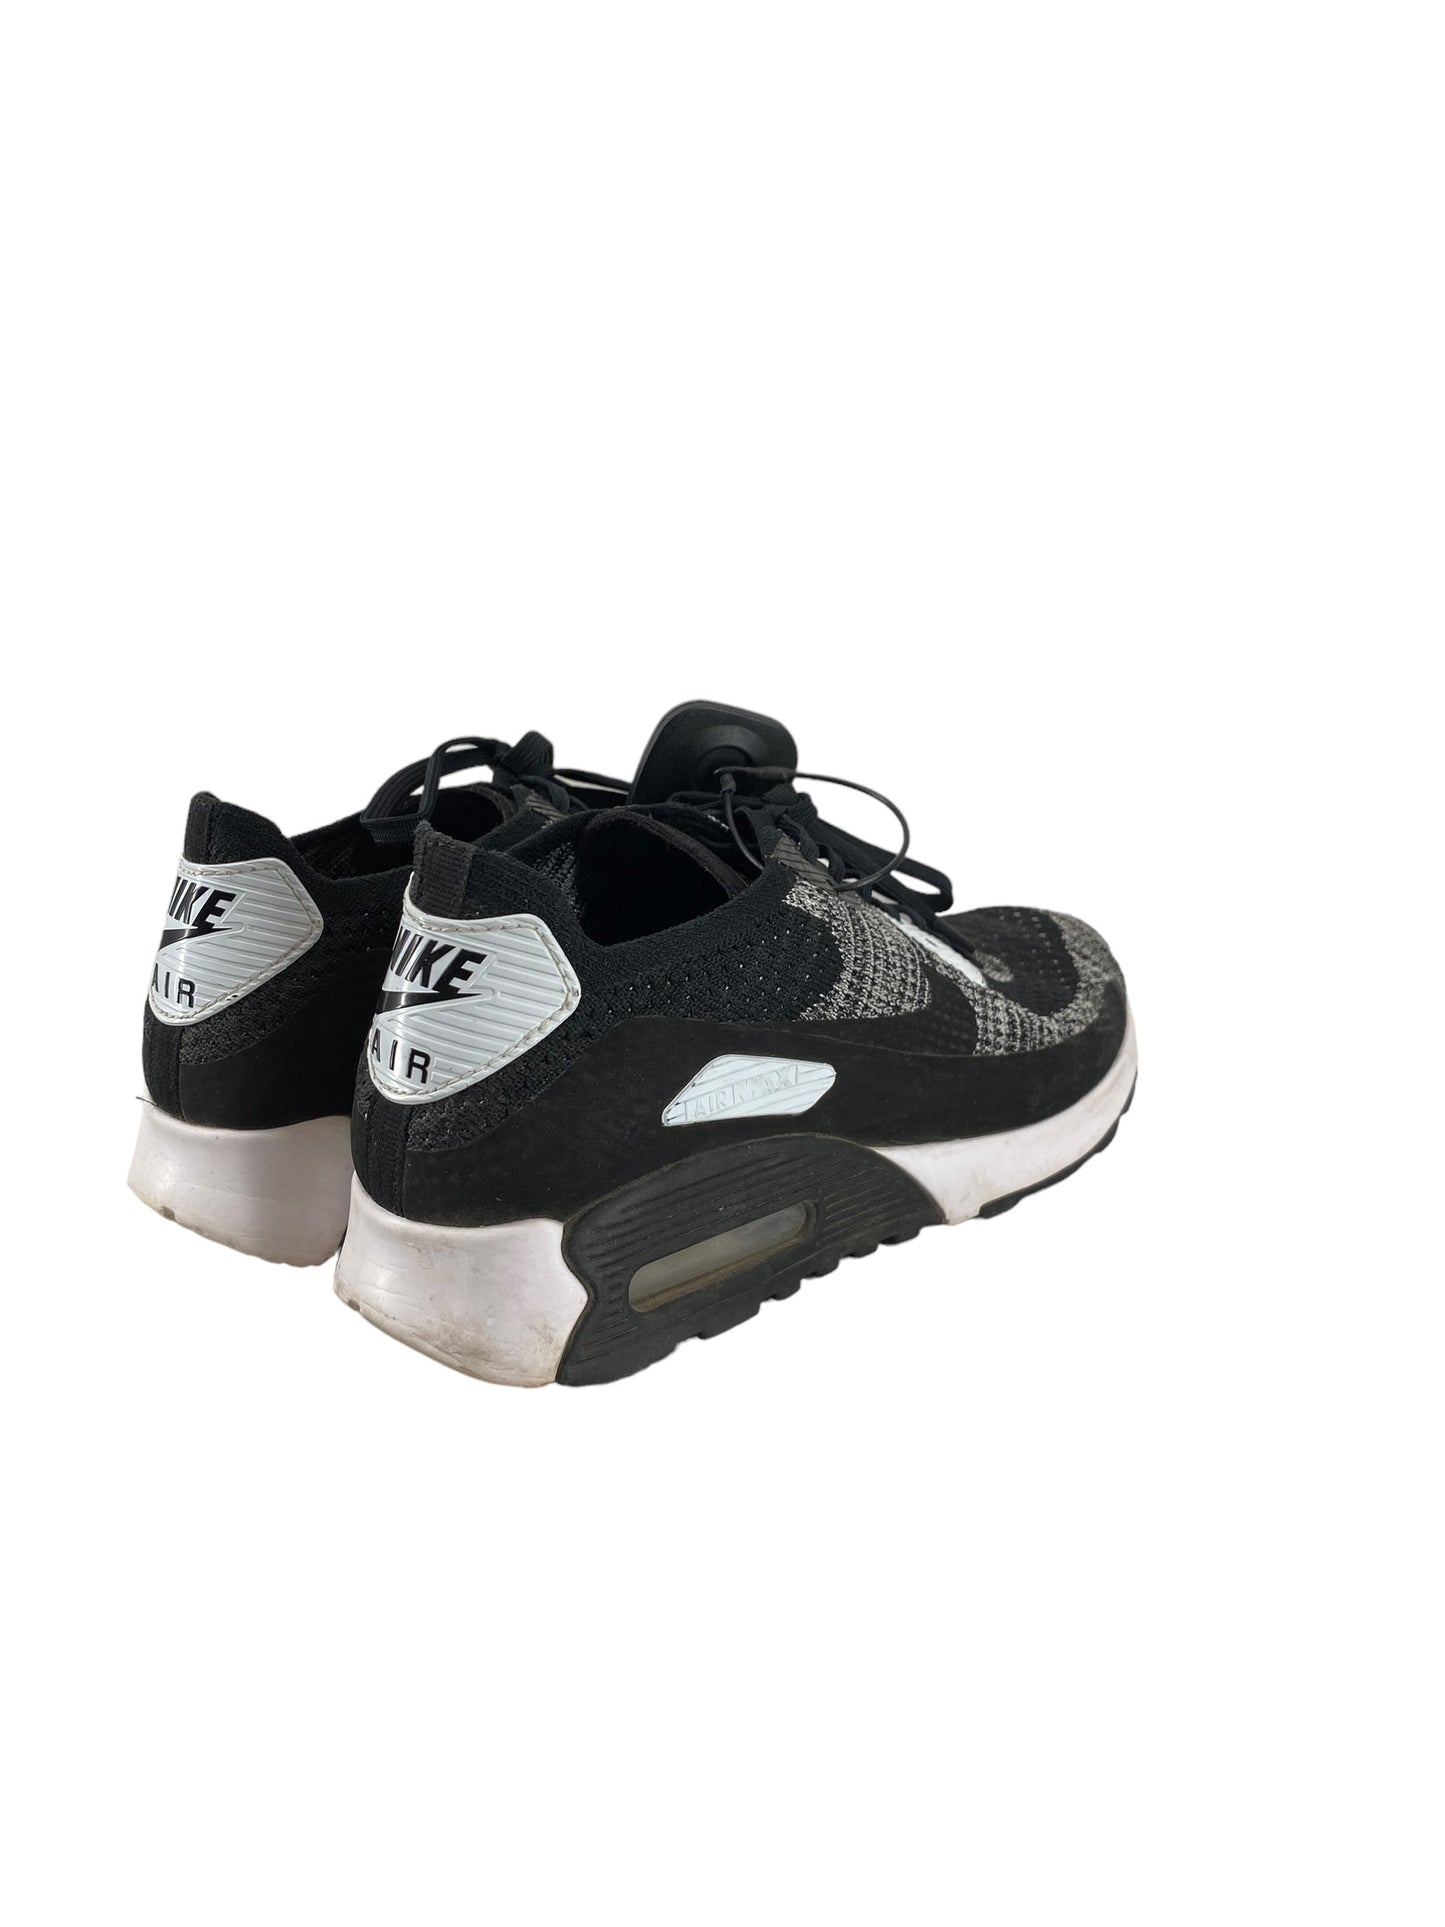 Black & White Shoes Athletic Nike, Size 8